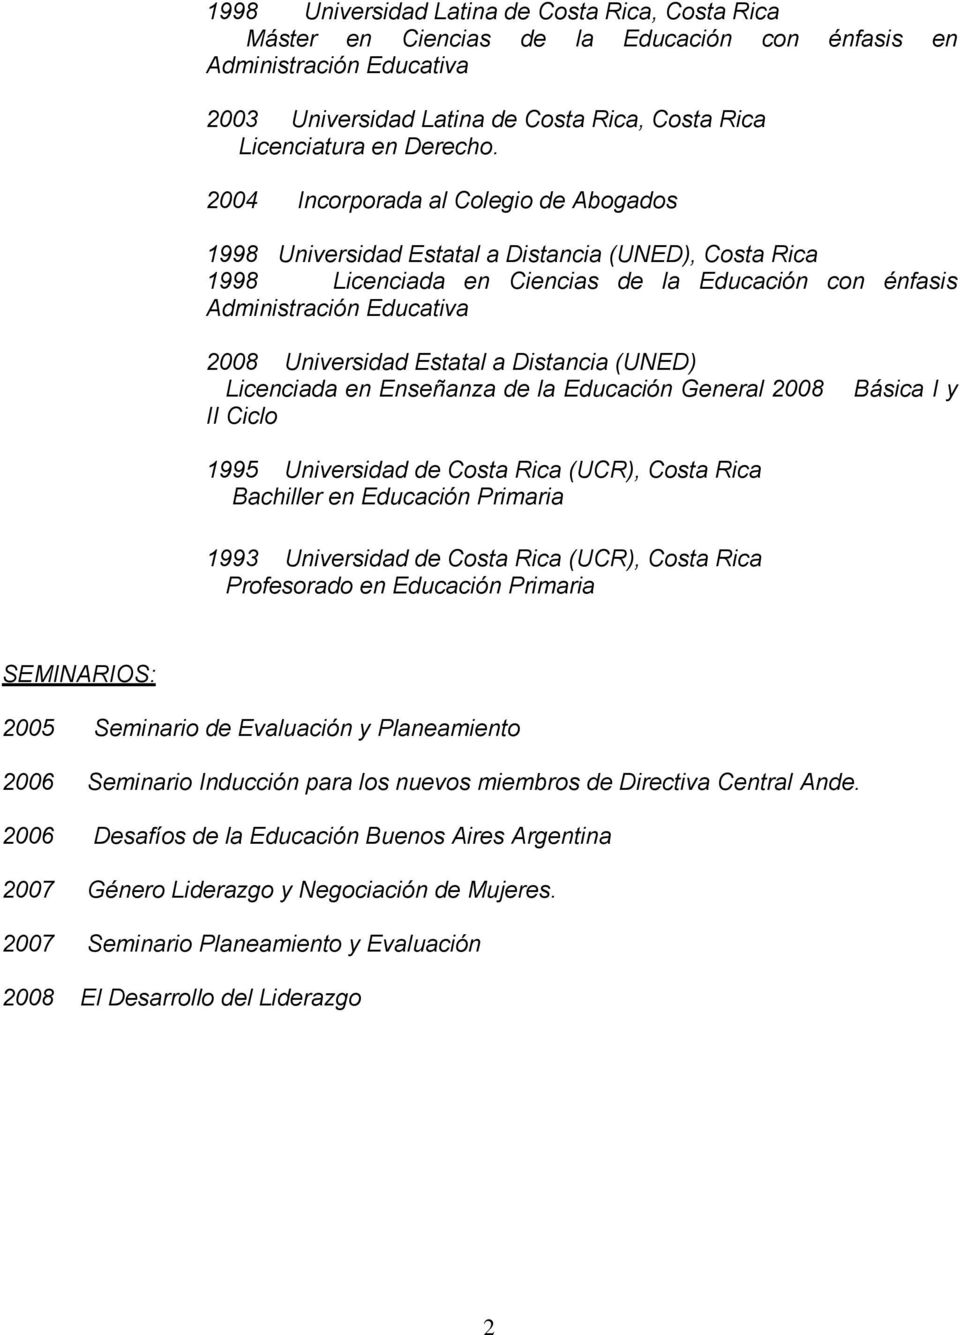 Estatal a Distancia (UNED) Licenciada en Enseñanza de la Educación General 2008 II Ciclo Básica I y 1995 Universidad de Costa Rica (UCR), Costa Rica Bachiller en Educación Primaria 1993 Universidad